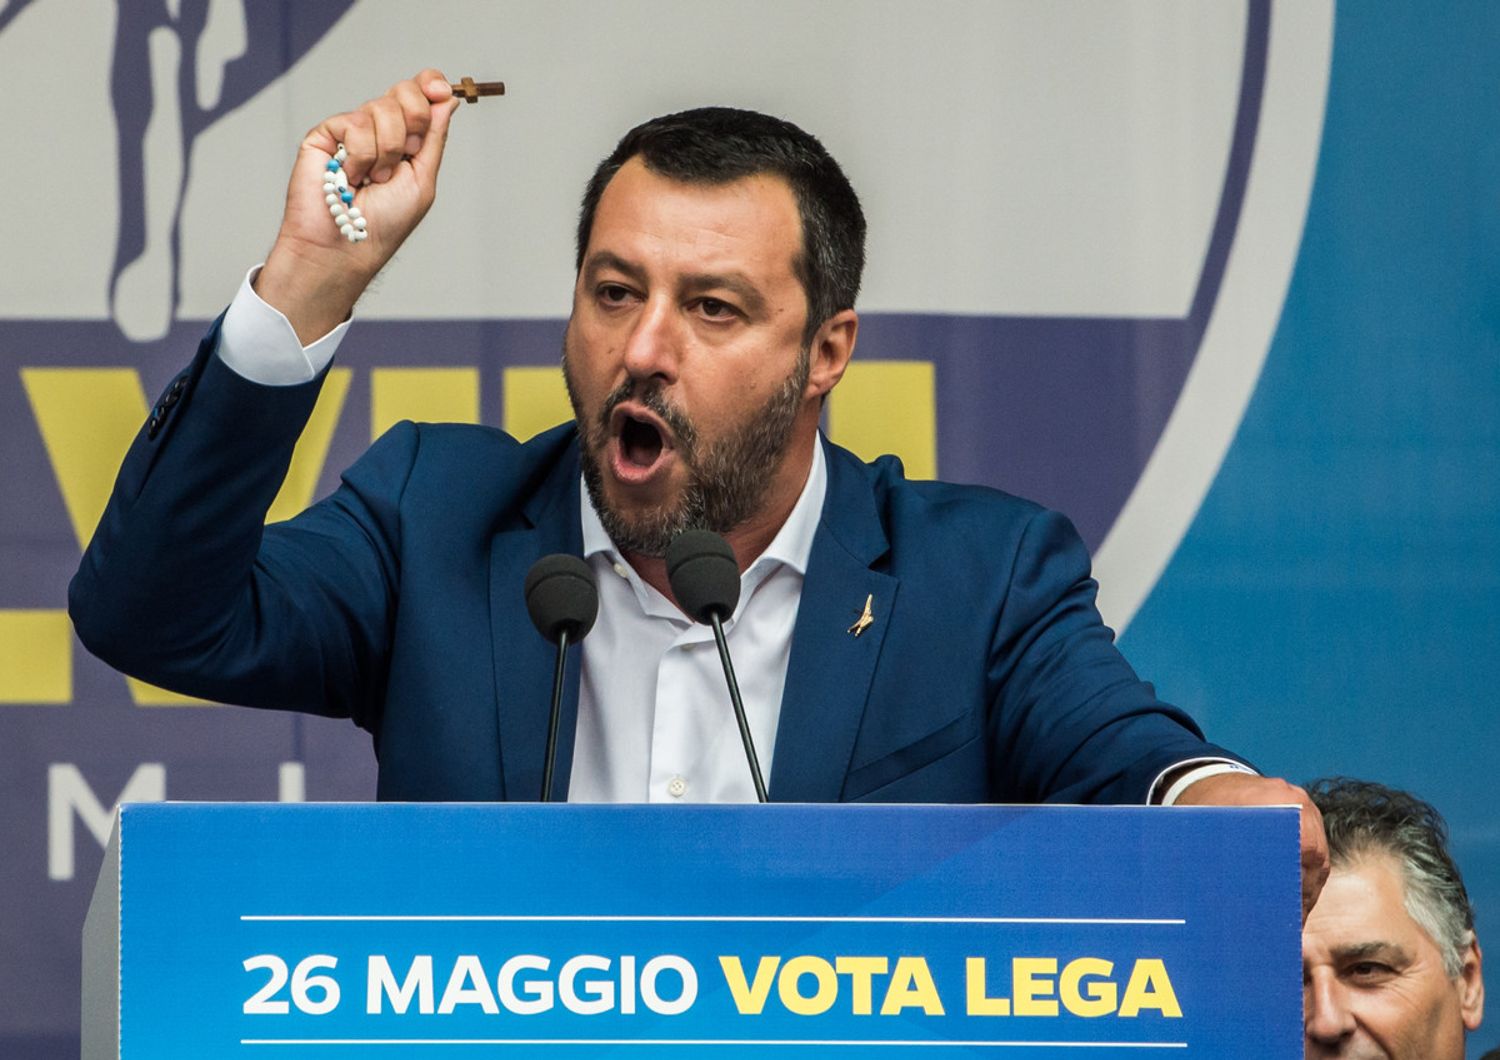 Salvini brandisce il rosario durante la manifestazione dei sovranisti a Milano